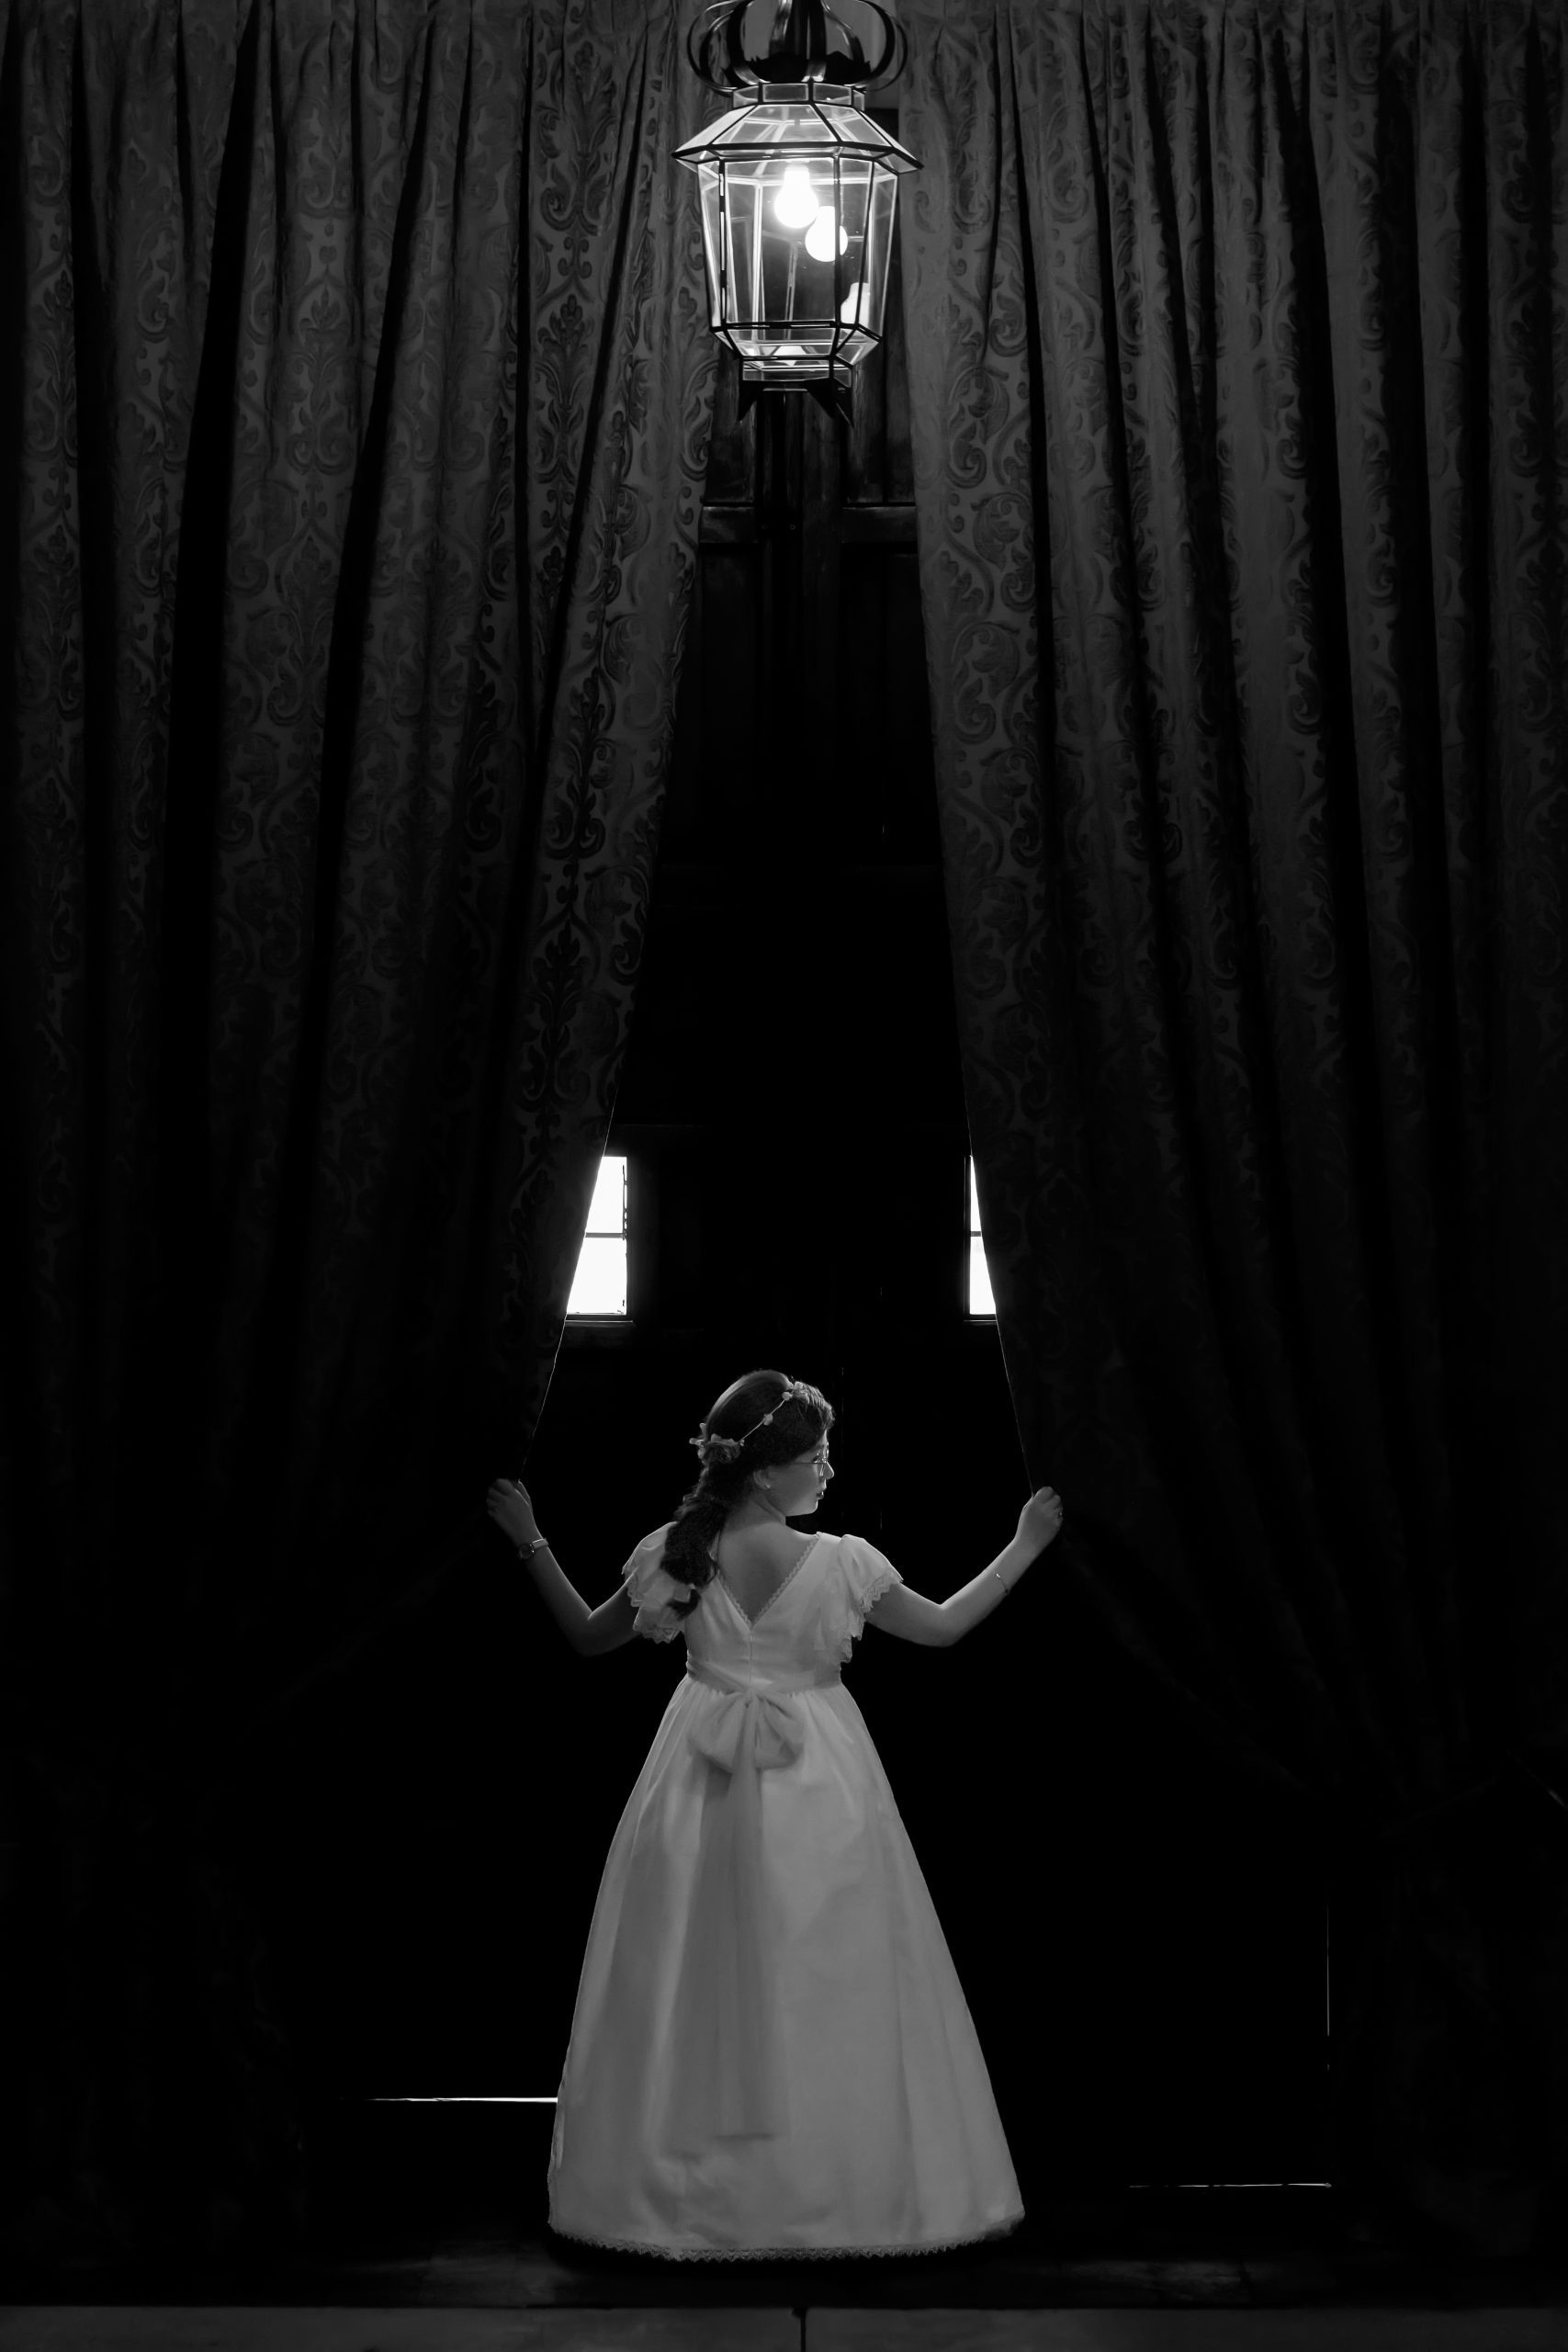 Fotografía en blanco y negro de una niña con vestido de comunión